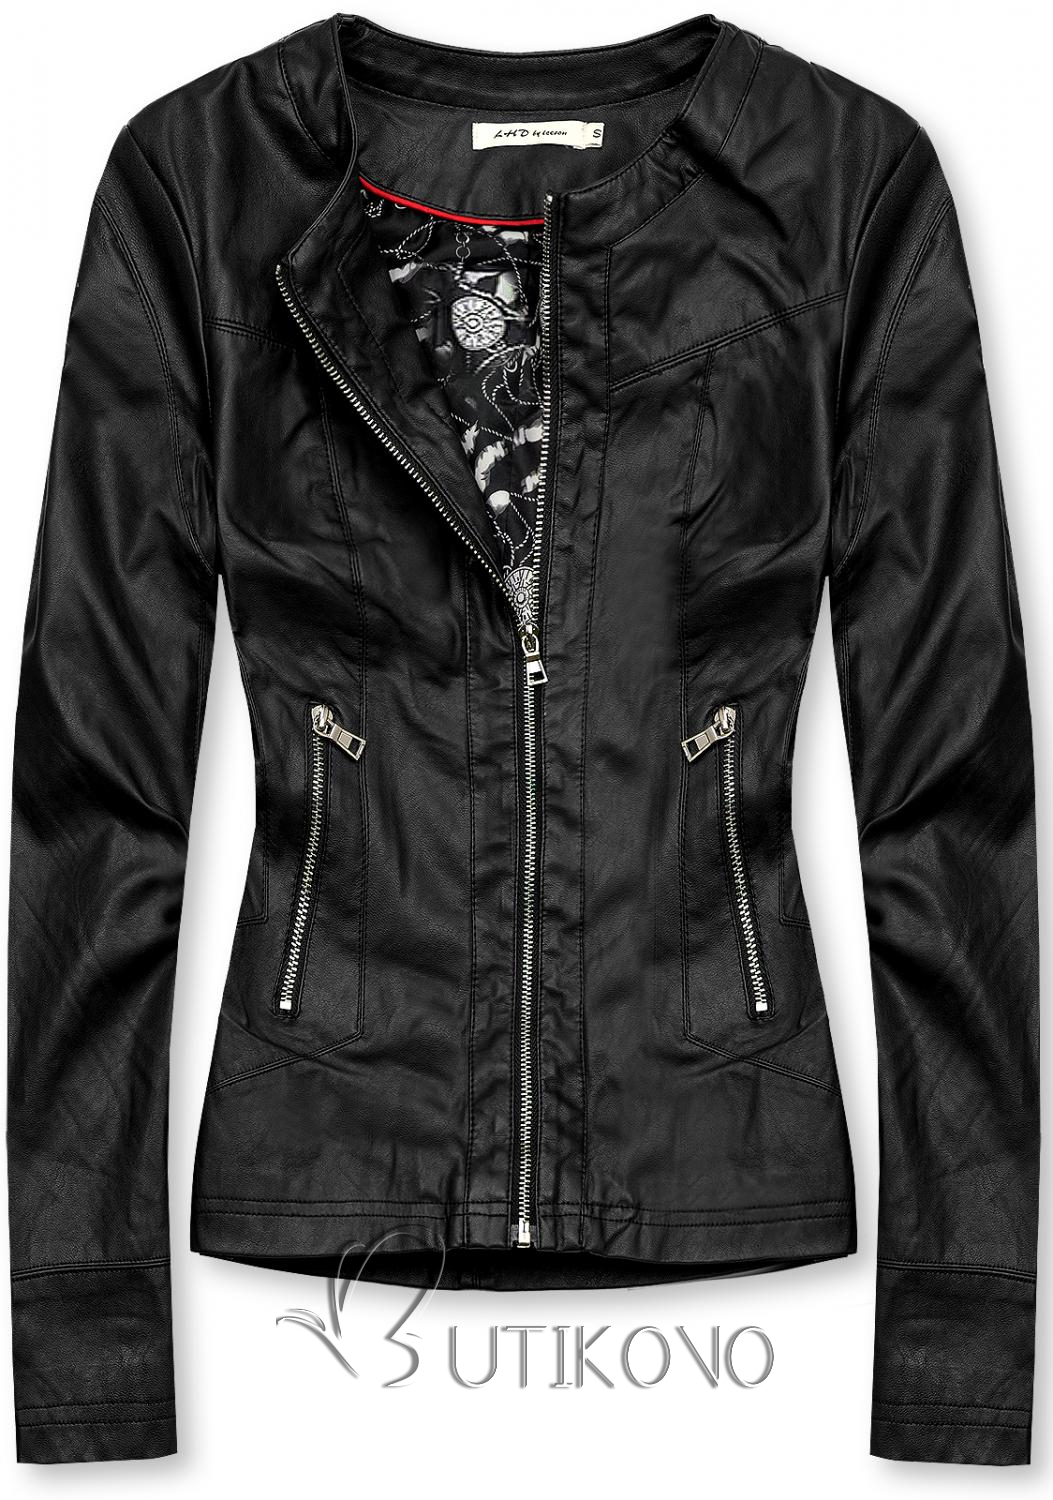 Čierna koženková bunda so vzorovanou podšívkou